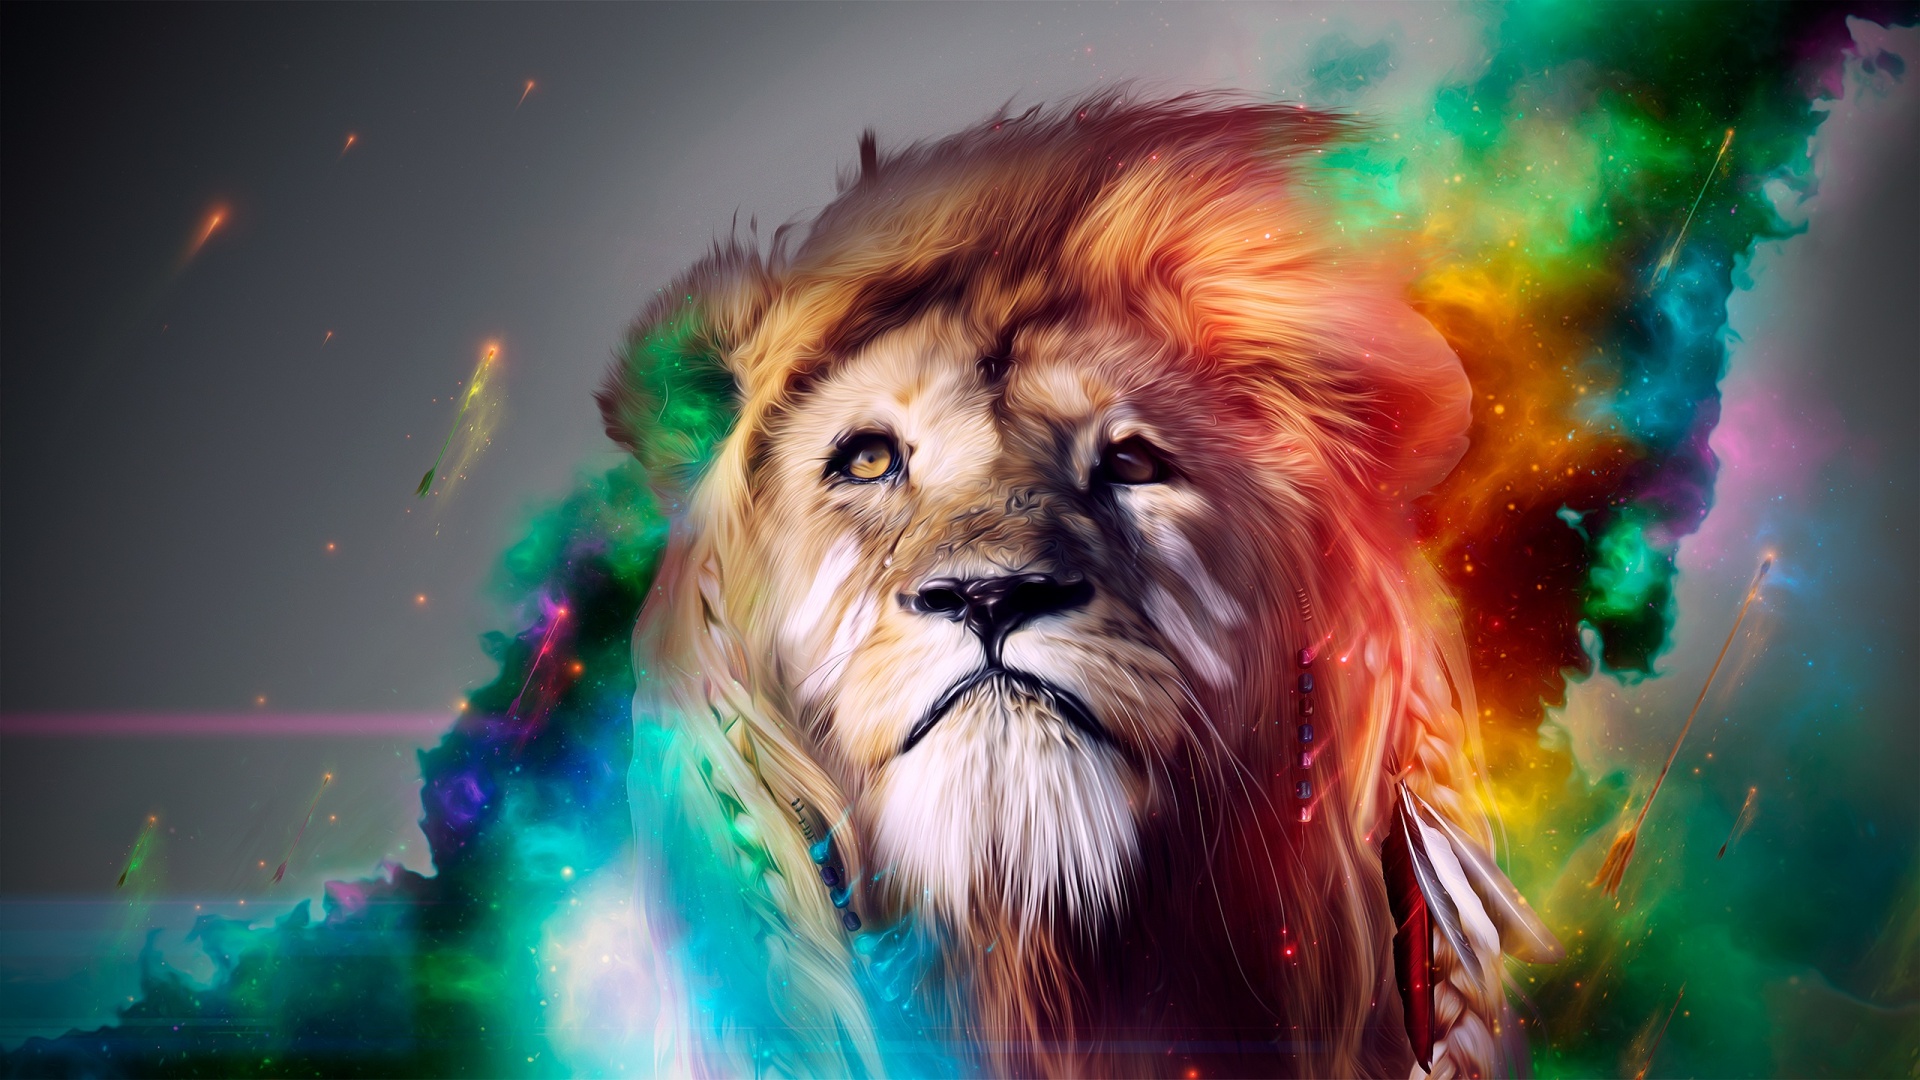 Cool lion wallpaper hd